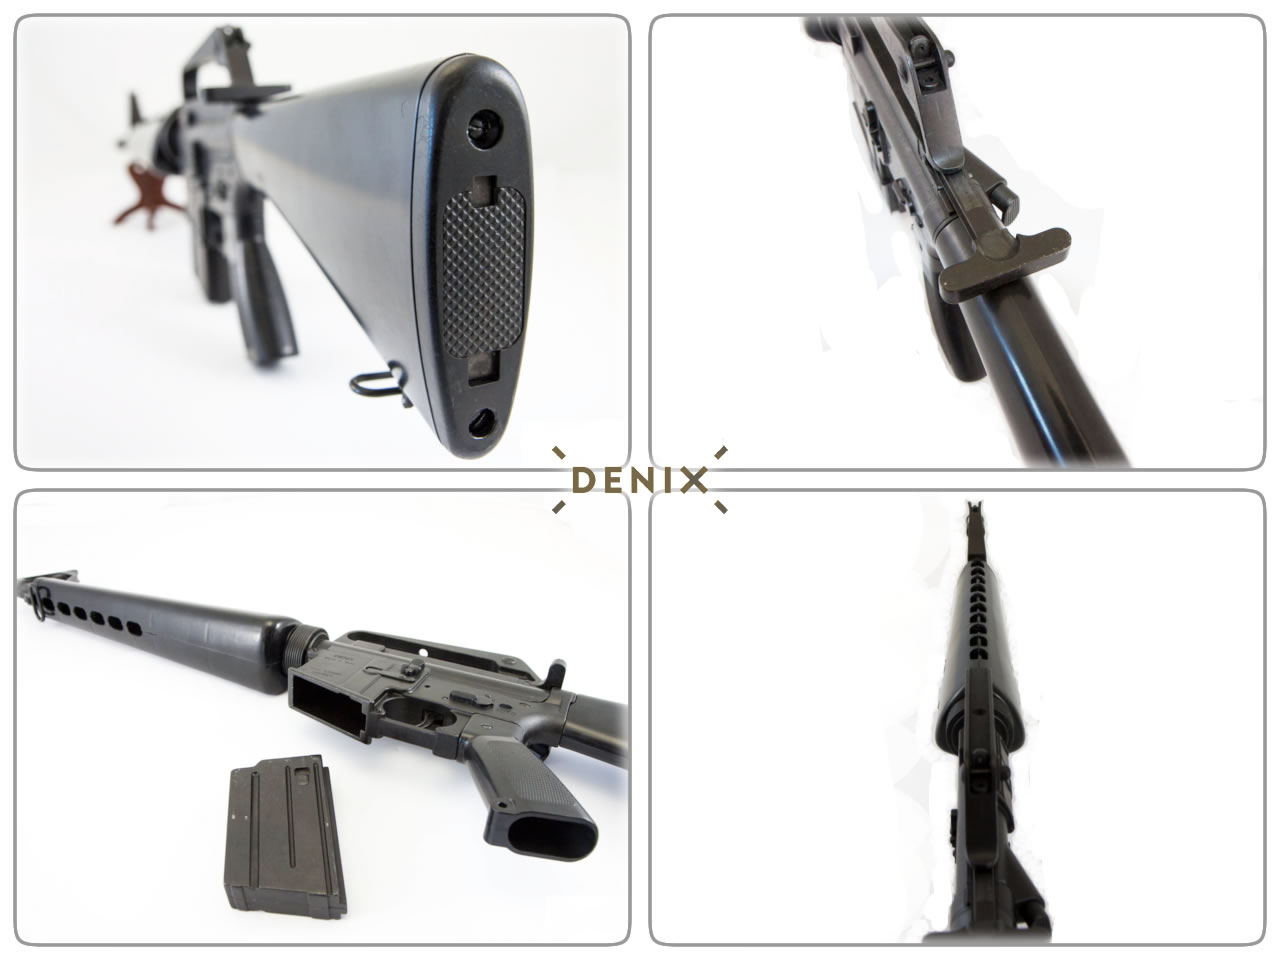 DENIX Deko-Sturmgewehr M16A1, 98 cm, detailgetreuer 1:1 Nachbau, voll beweglich